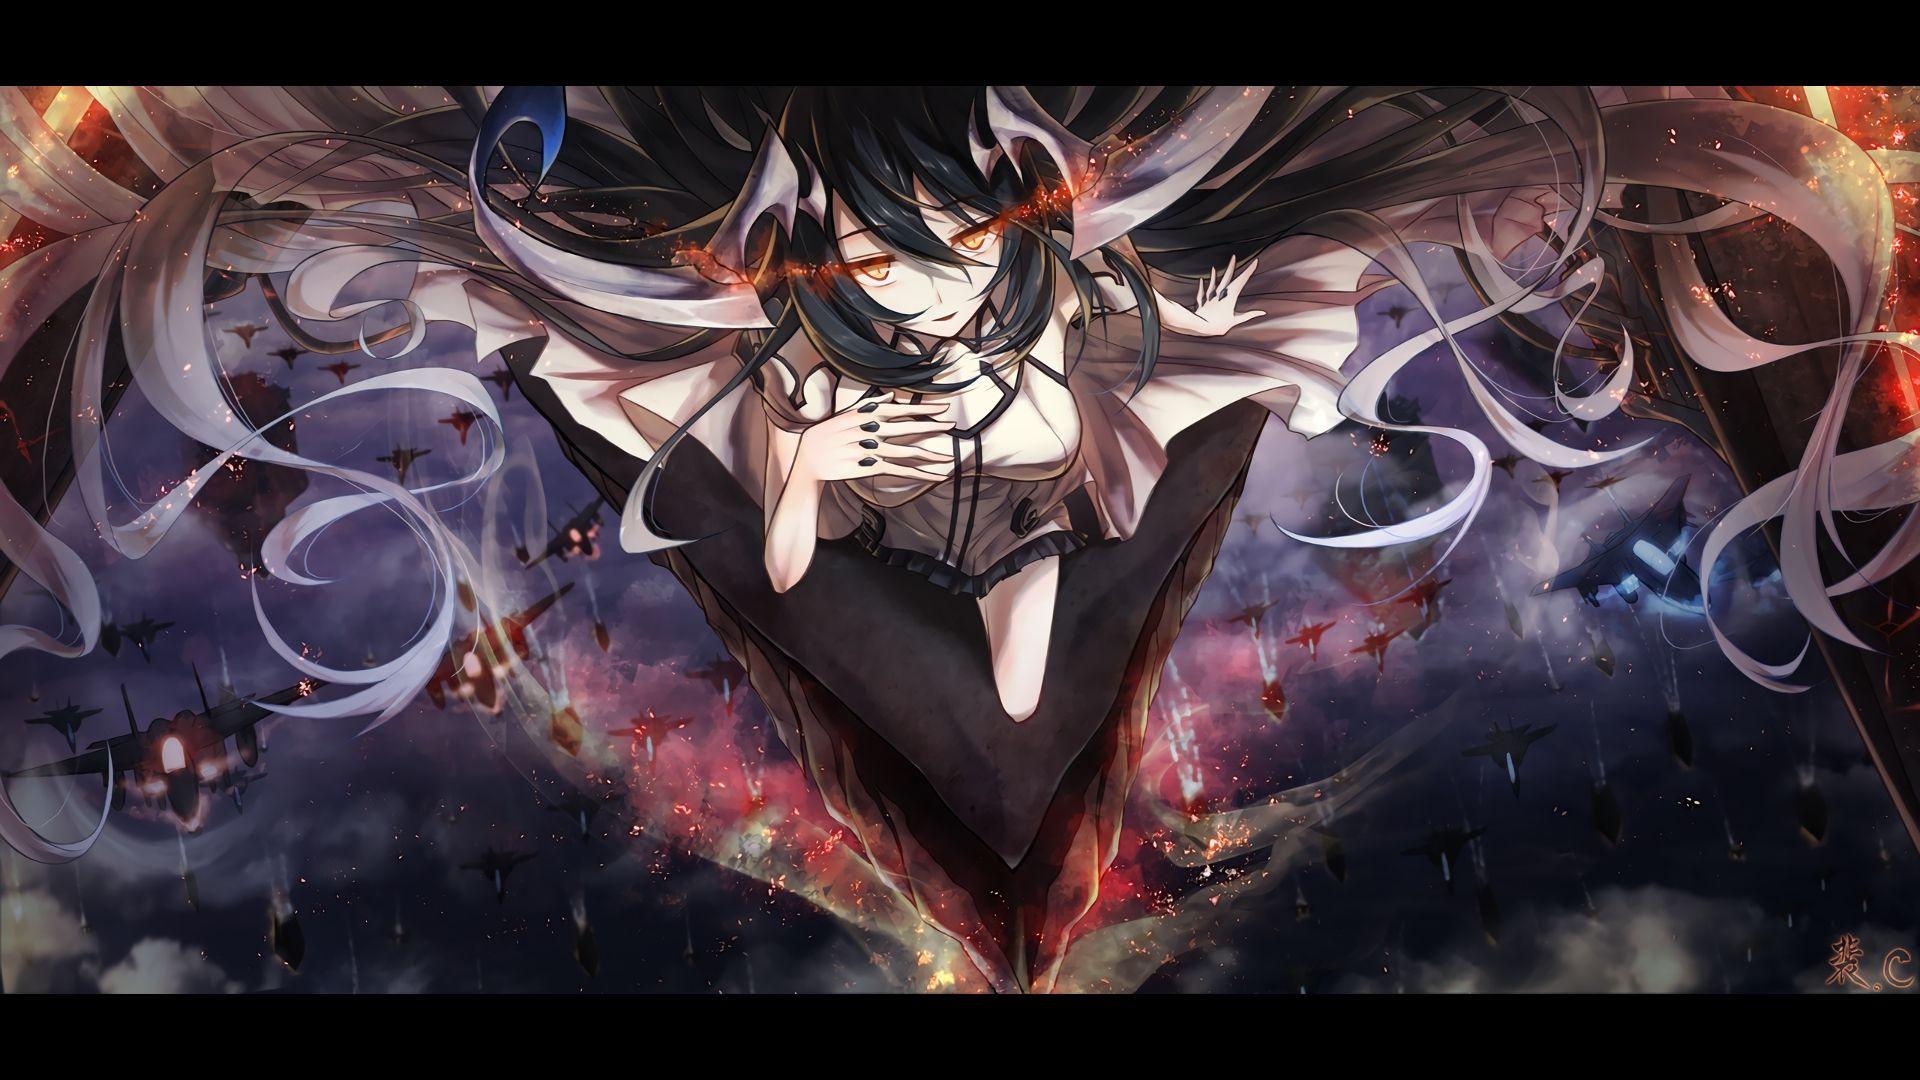 Anime Demon Girl Wallpaper Free Anime Demon Girl